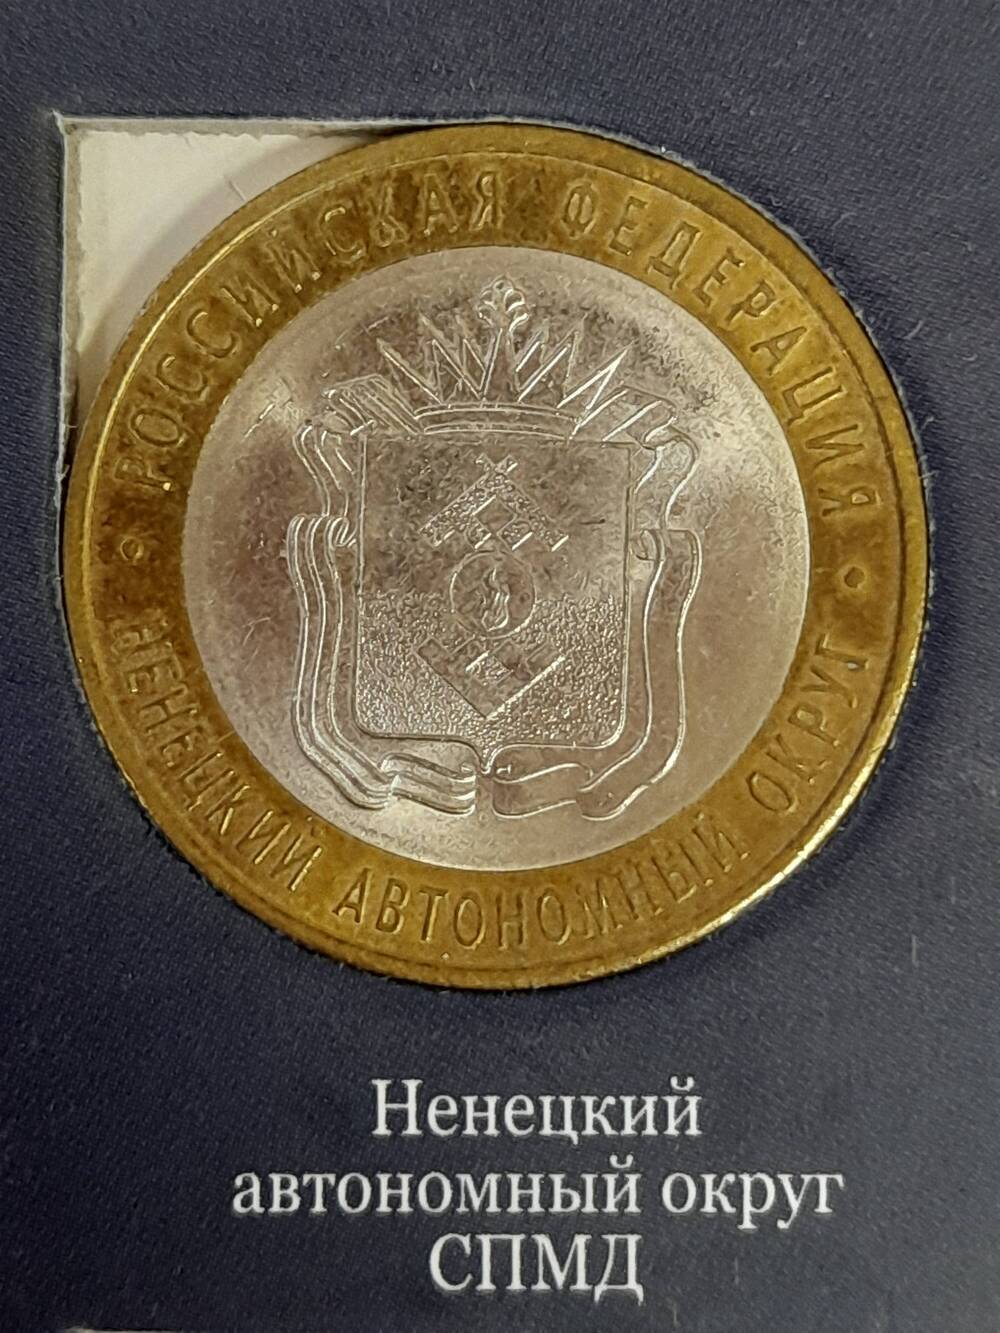 Монета памятная 10 РУБЛЕЙ.  Ненецкий автономный округ 2010 г. Россия